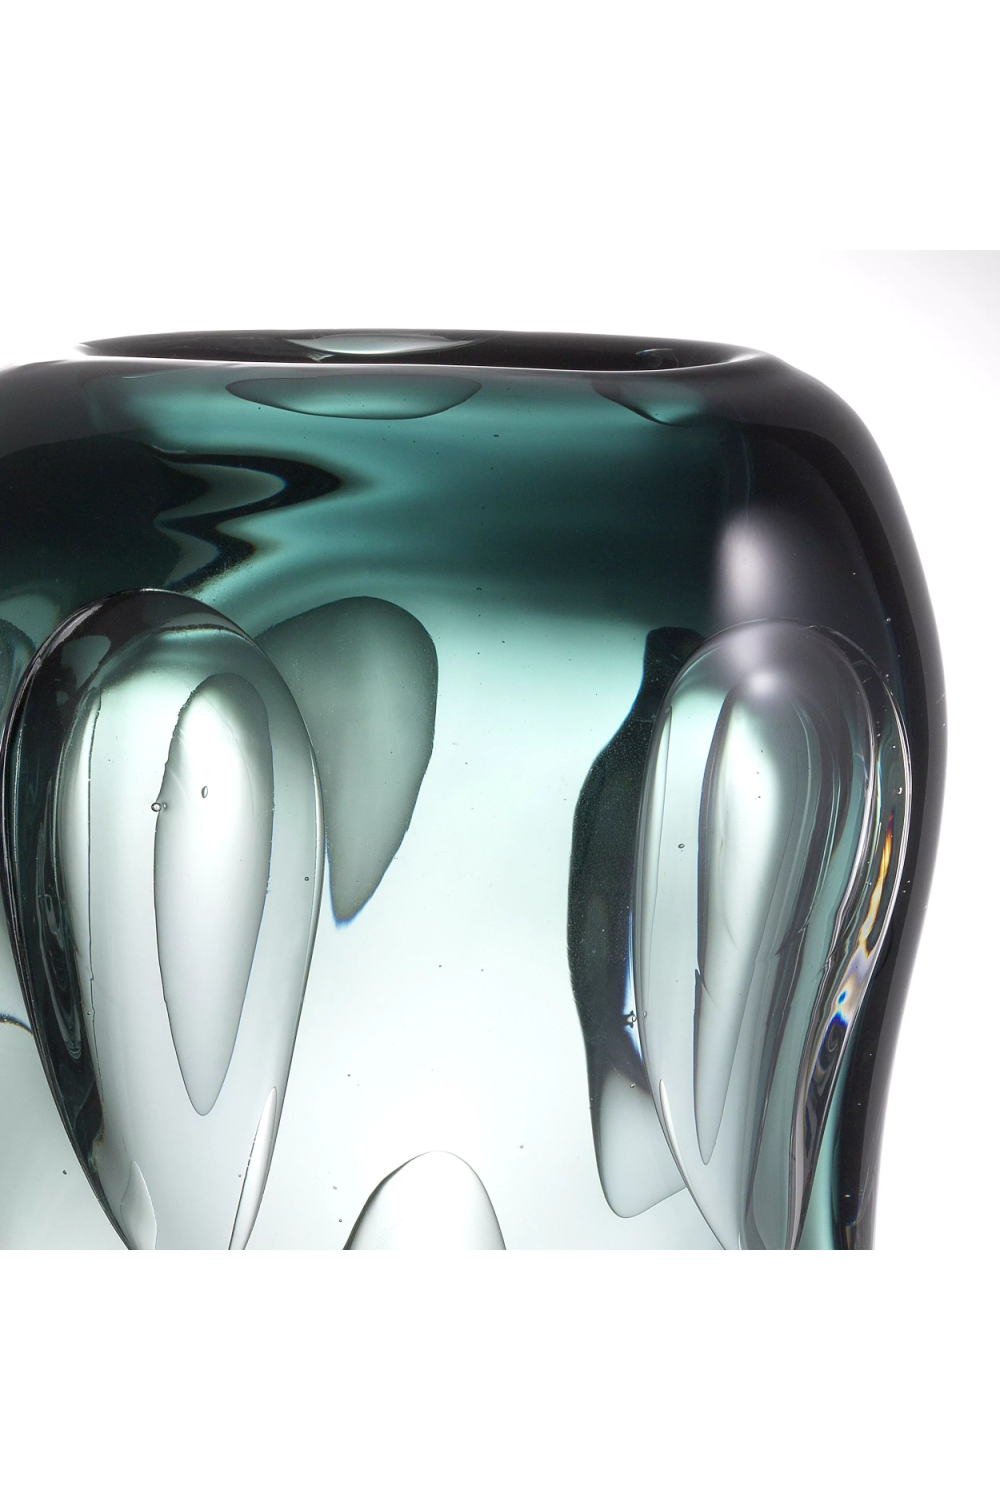 Handblown Glass Vase | Eichholtz Sianni S | Oroa.com